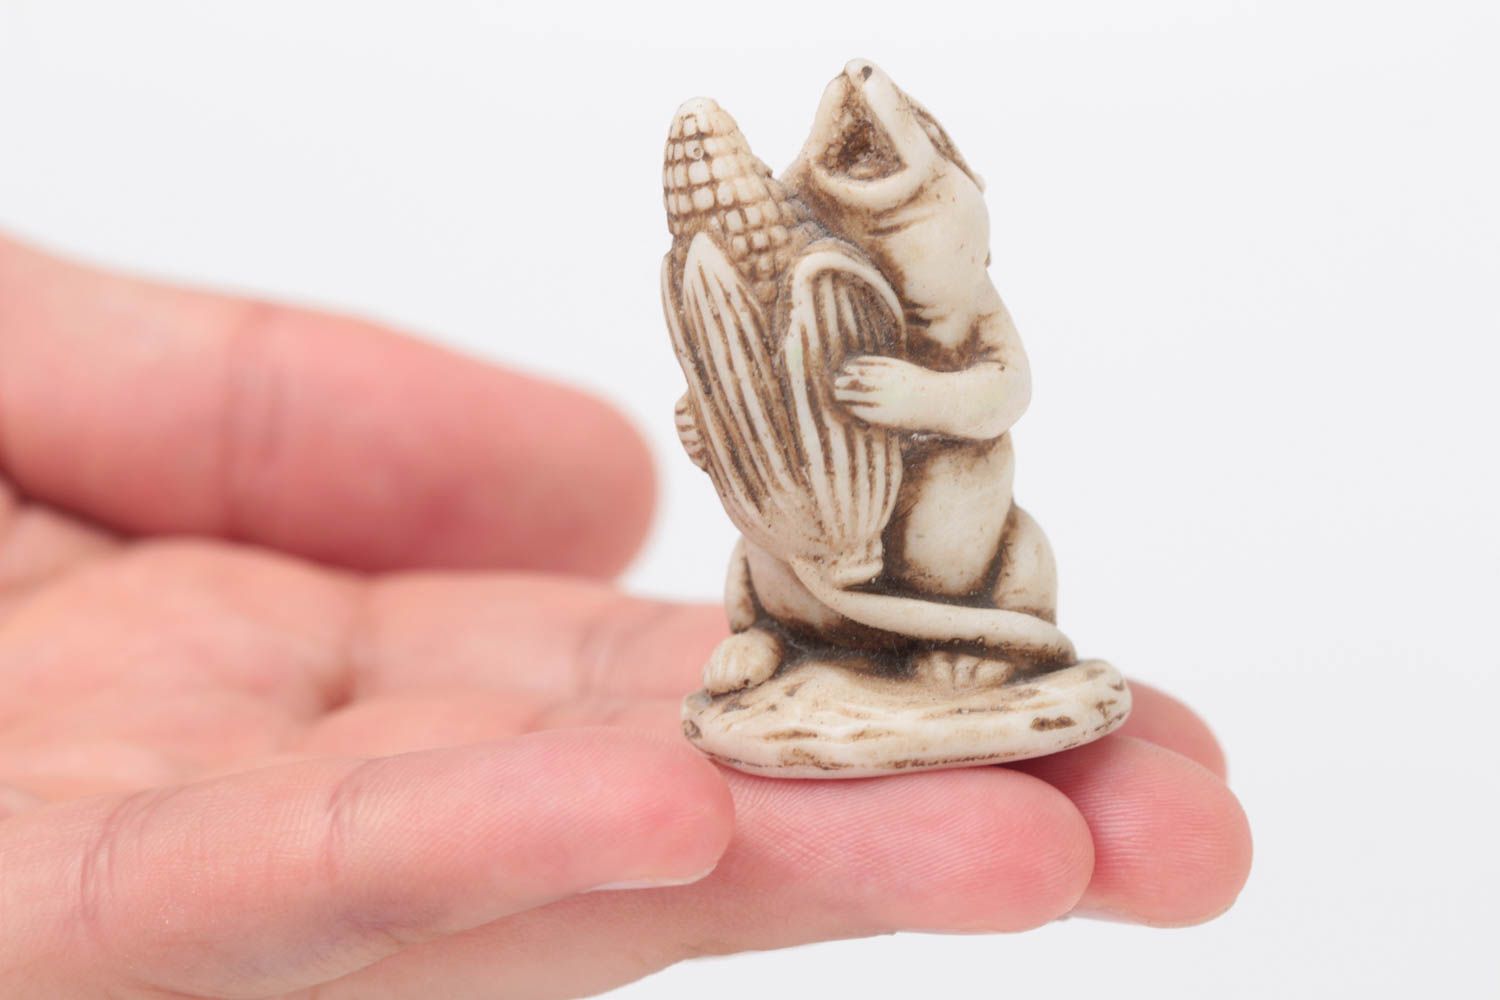 Statuetta piccola in argilla polimerica fatta a mano figurina decorativa  foto 5